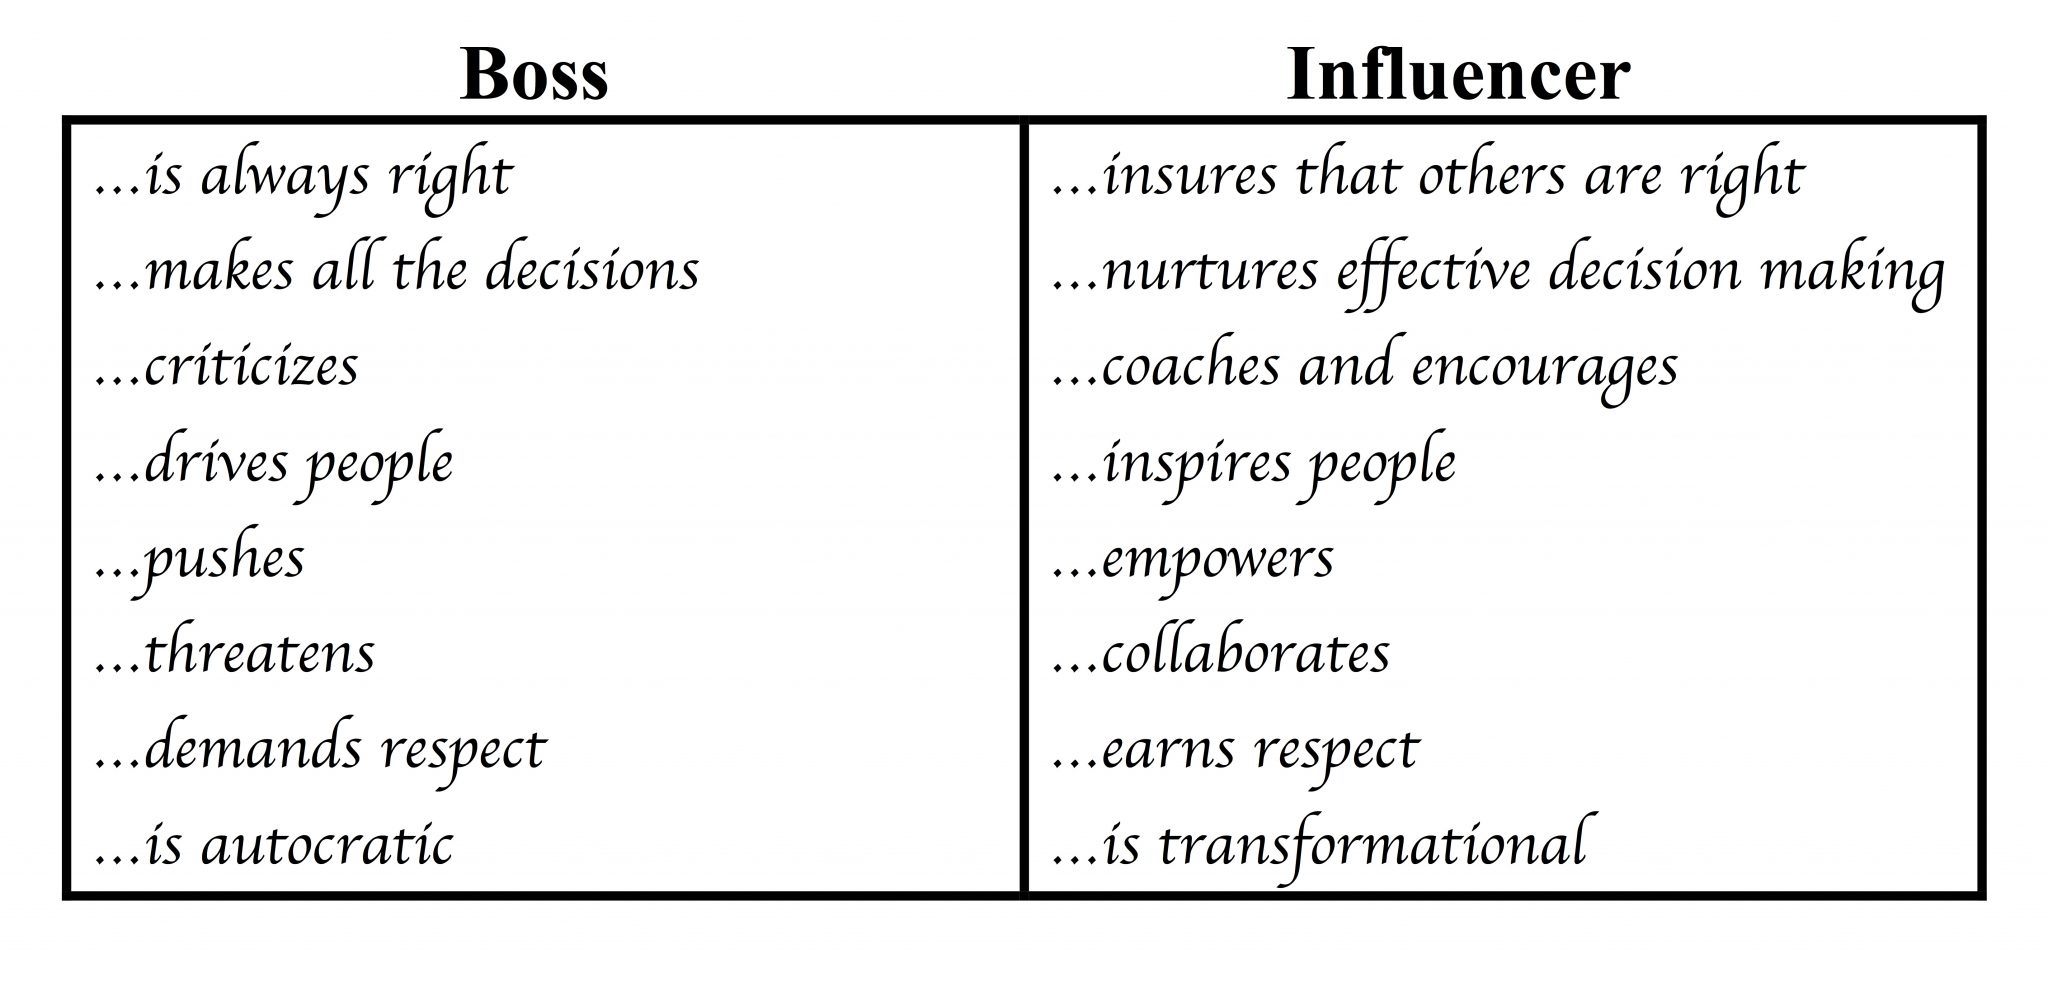 Boss-vs-Influencer.jpg